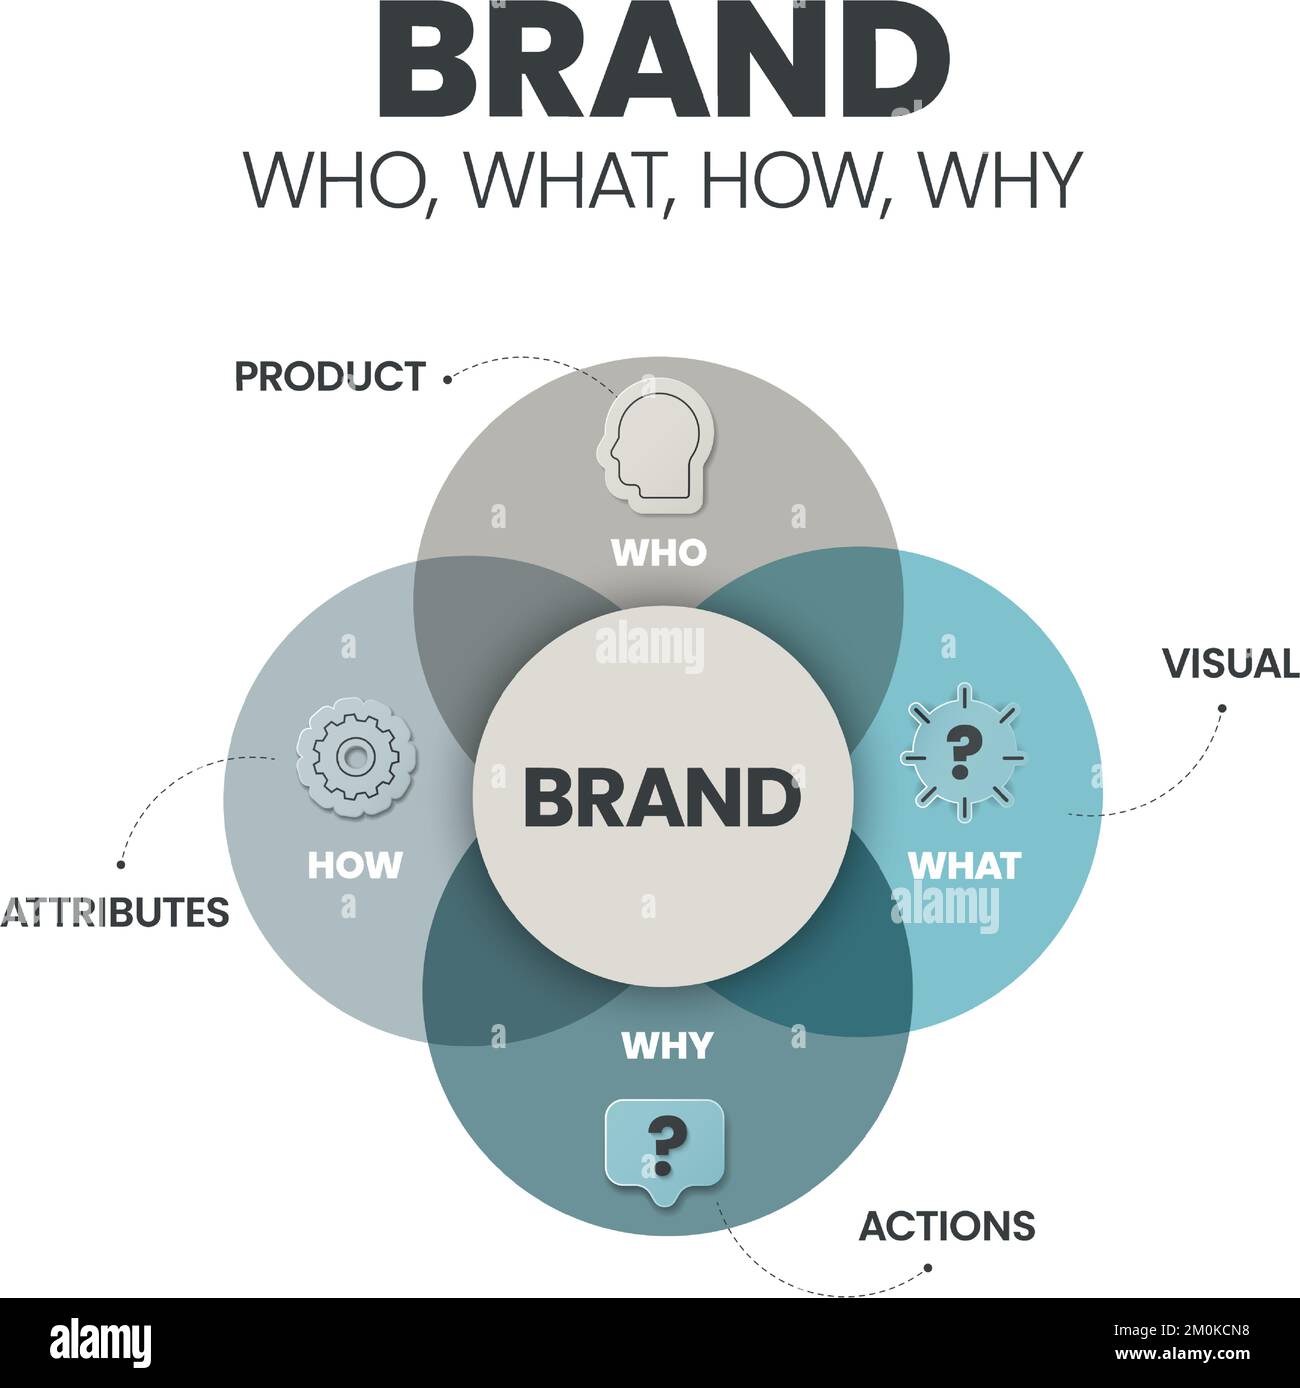 Strategia del marchio (Chi, cosa, come, perché) modello di presentazione infografica con icone ha prodotto, visivo, azioni e attributi. Business e Marketing Illustrazione Vettoriale